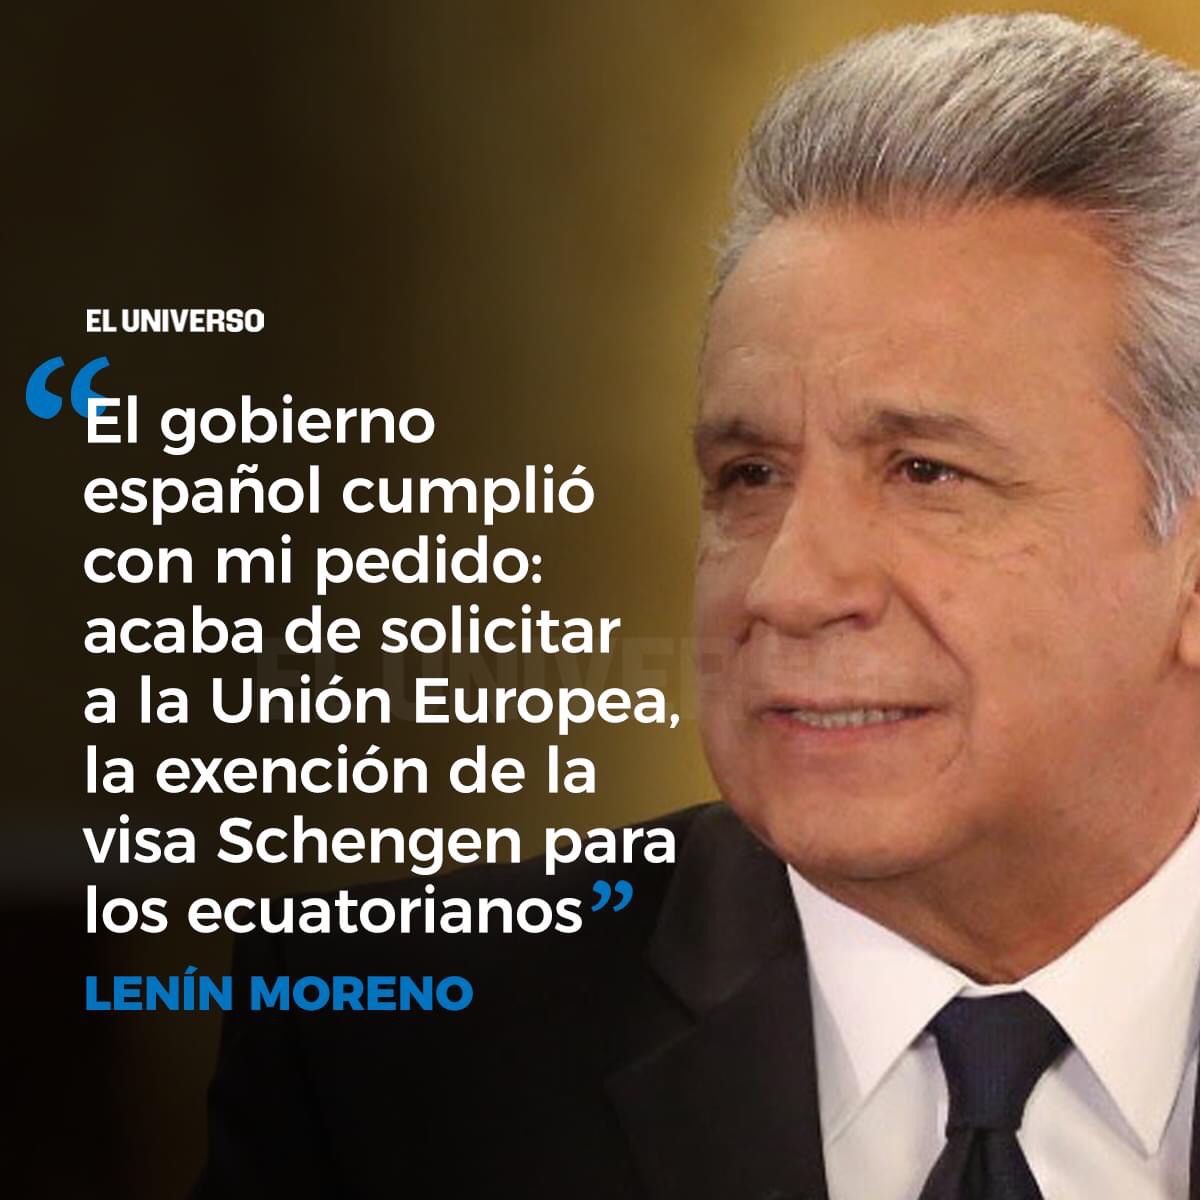 Il presidente ecuadoriano Lenin Moreno